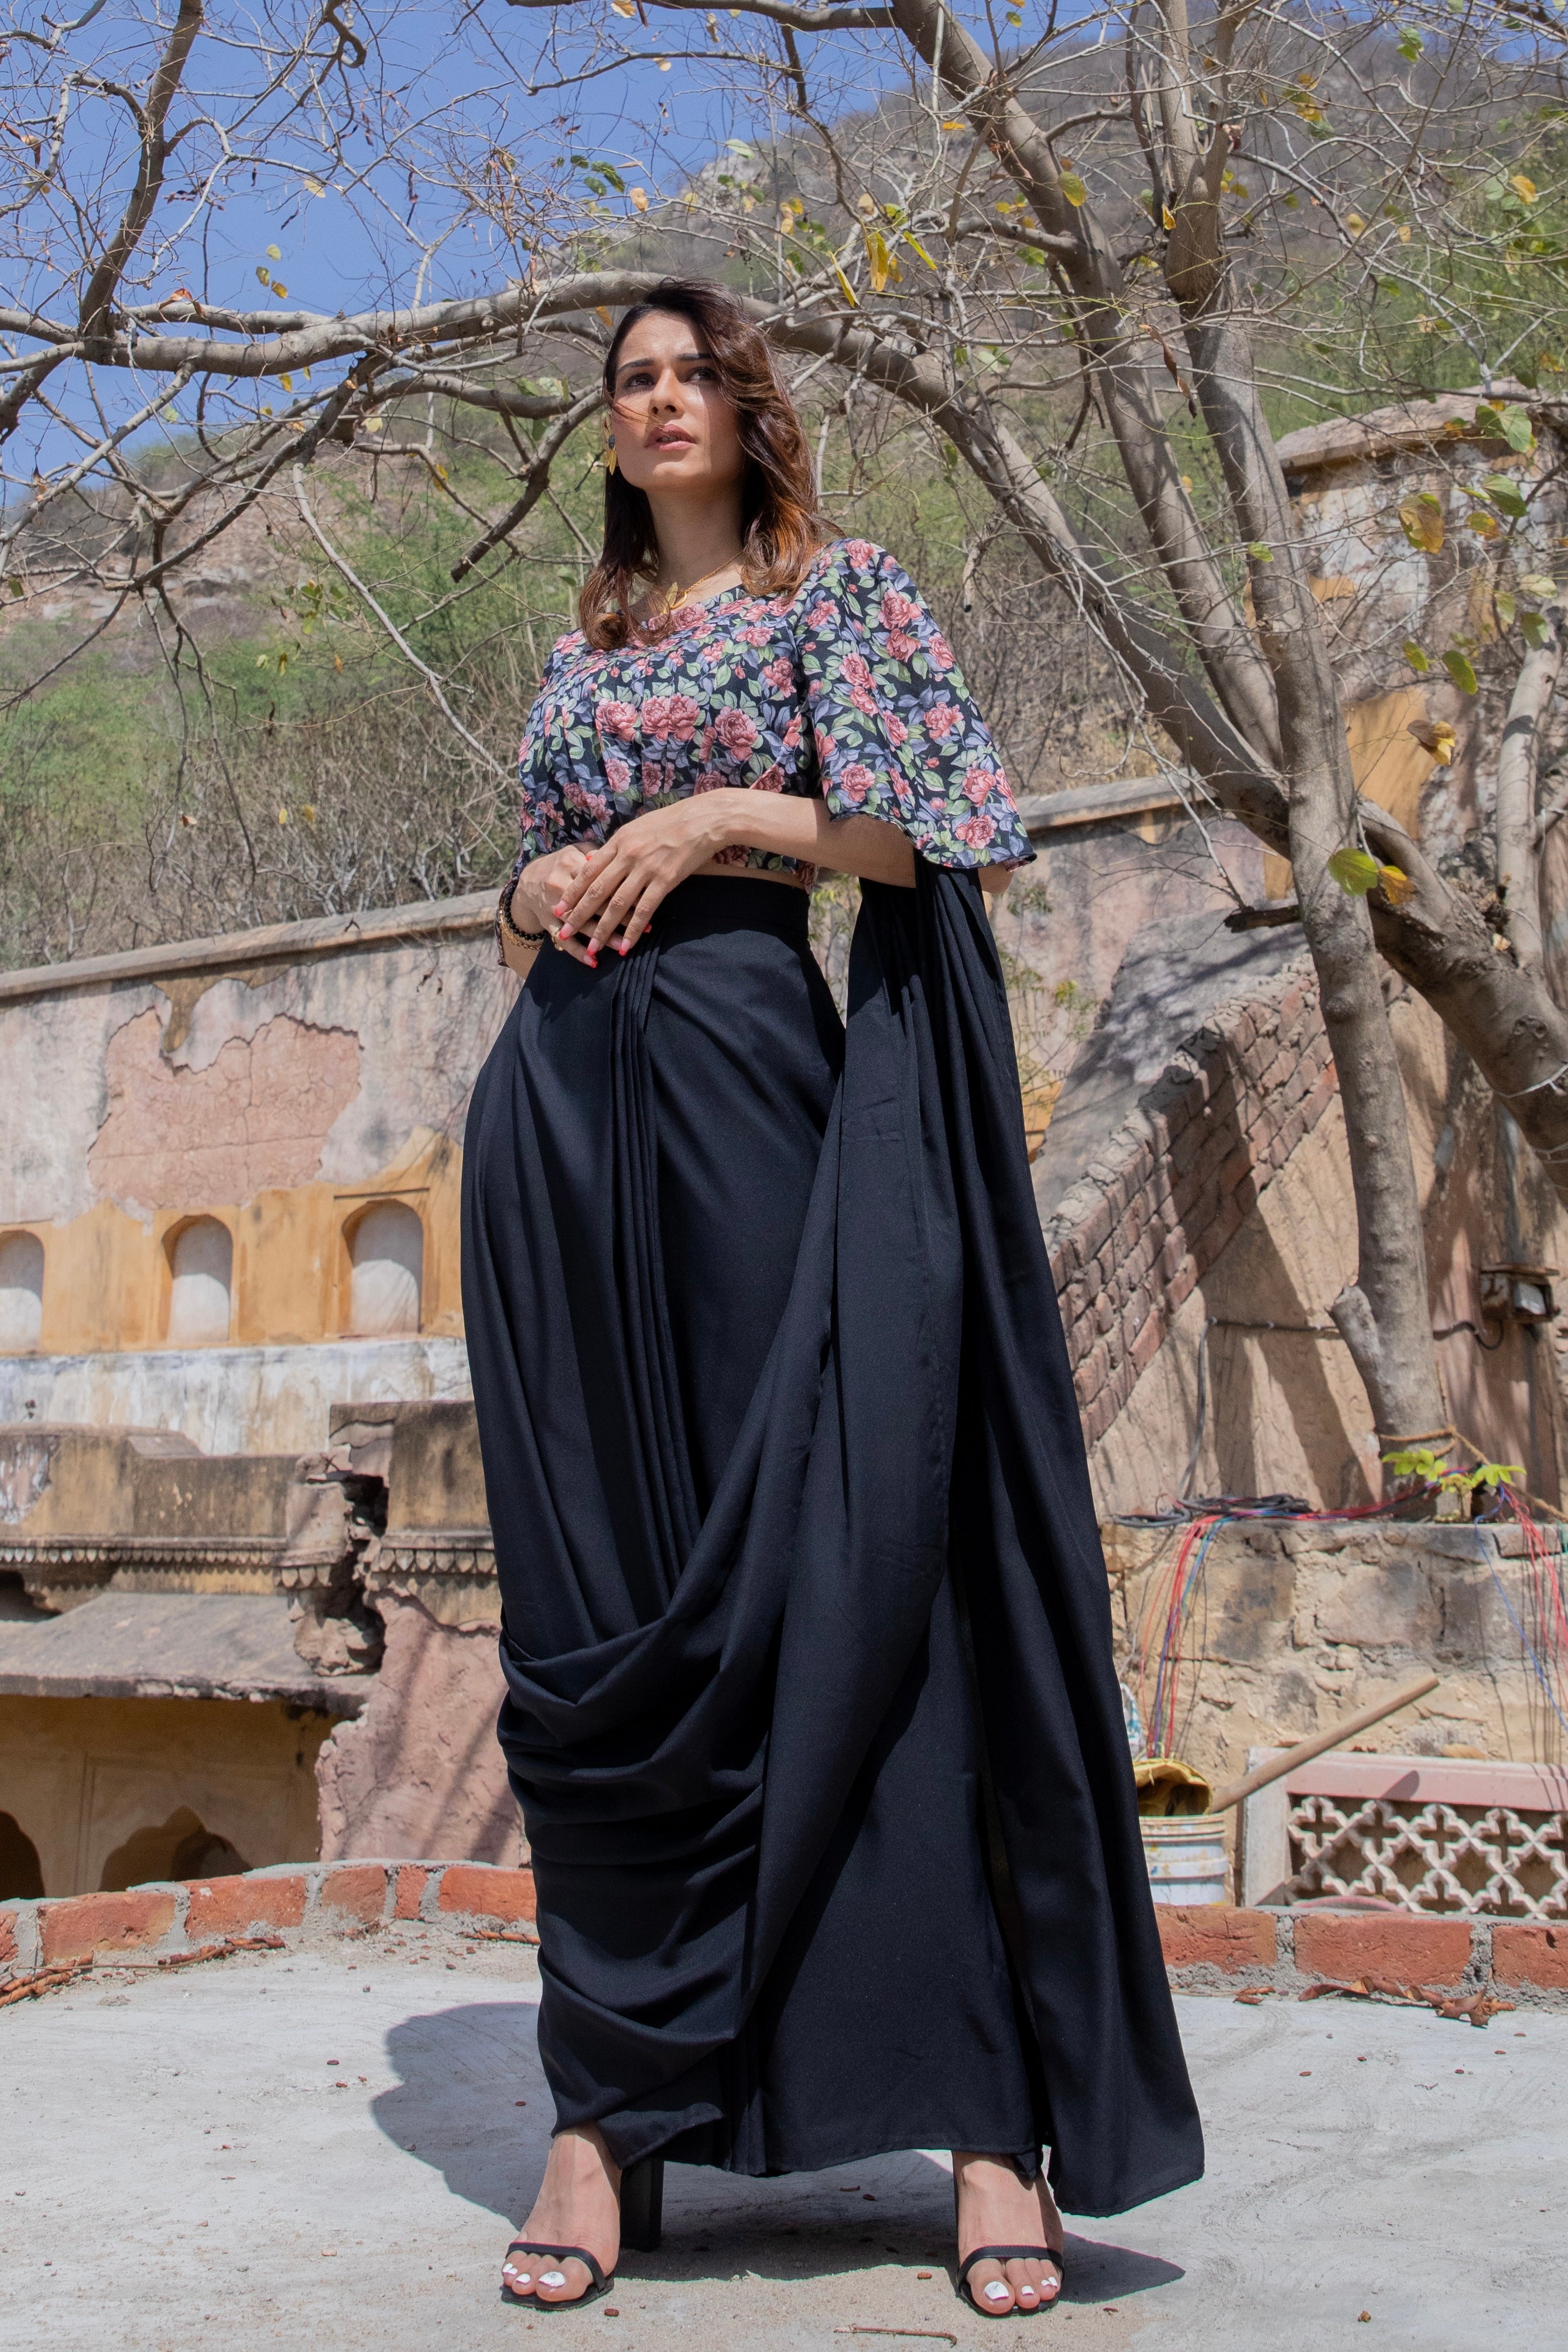 Dust Pink stitch drape saree set – Meghna Shah